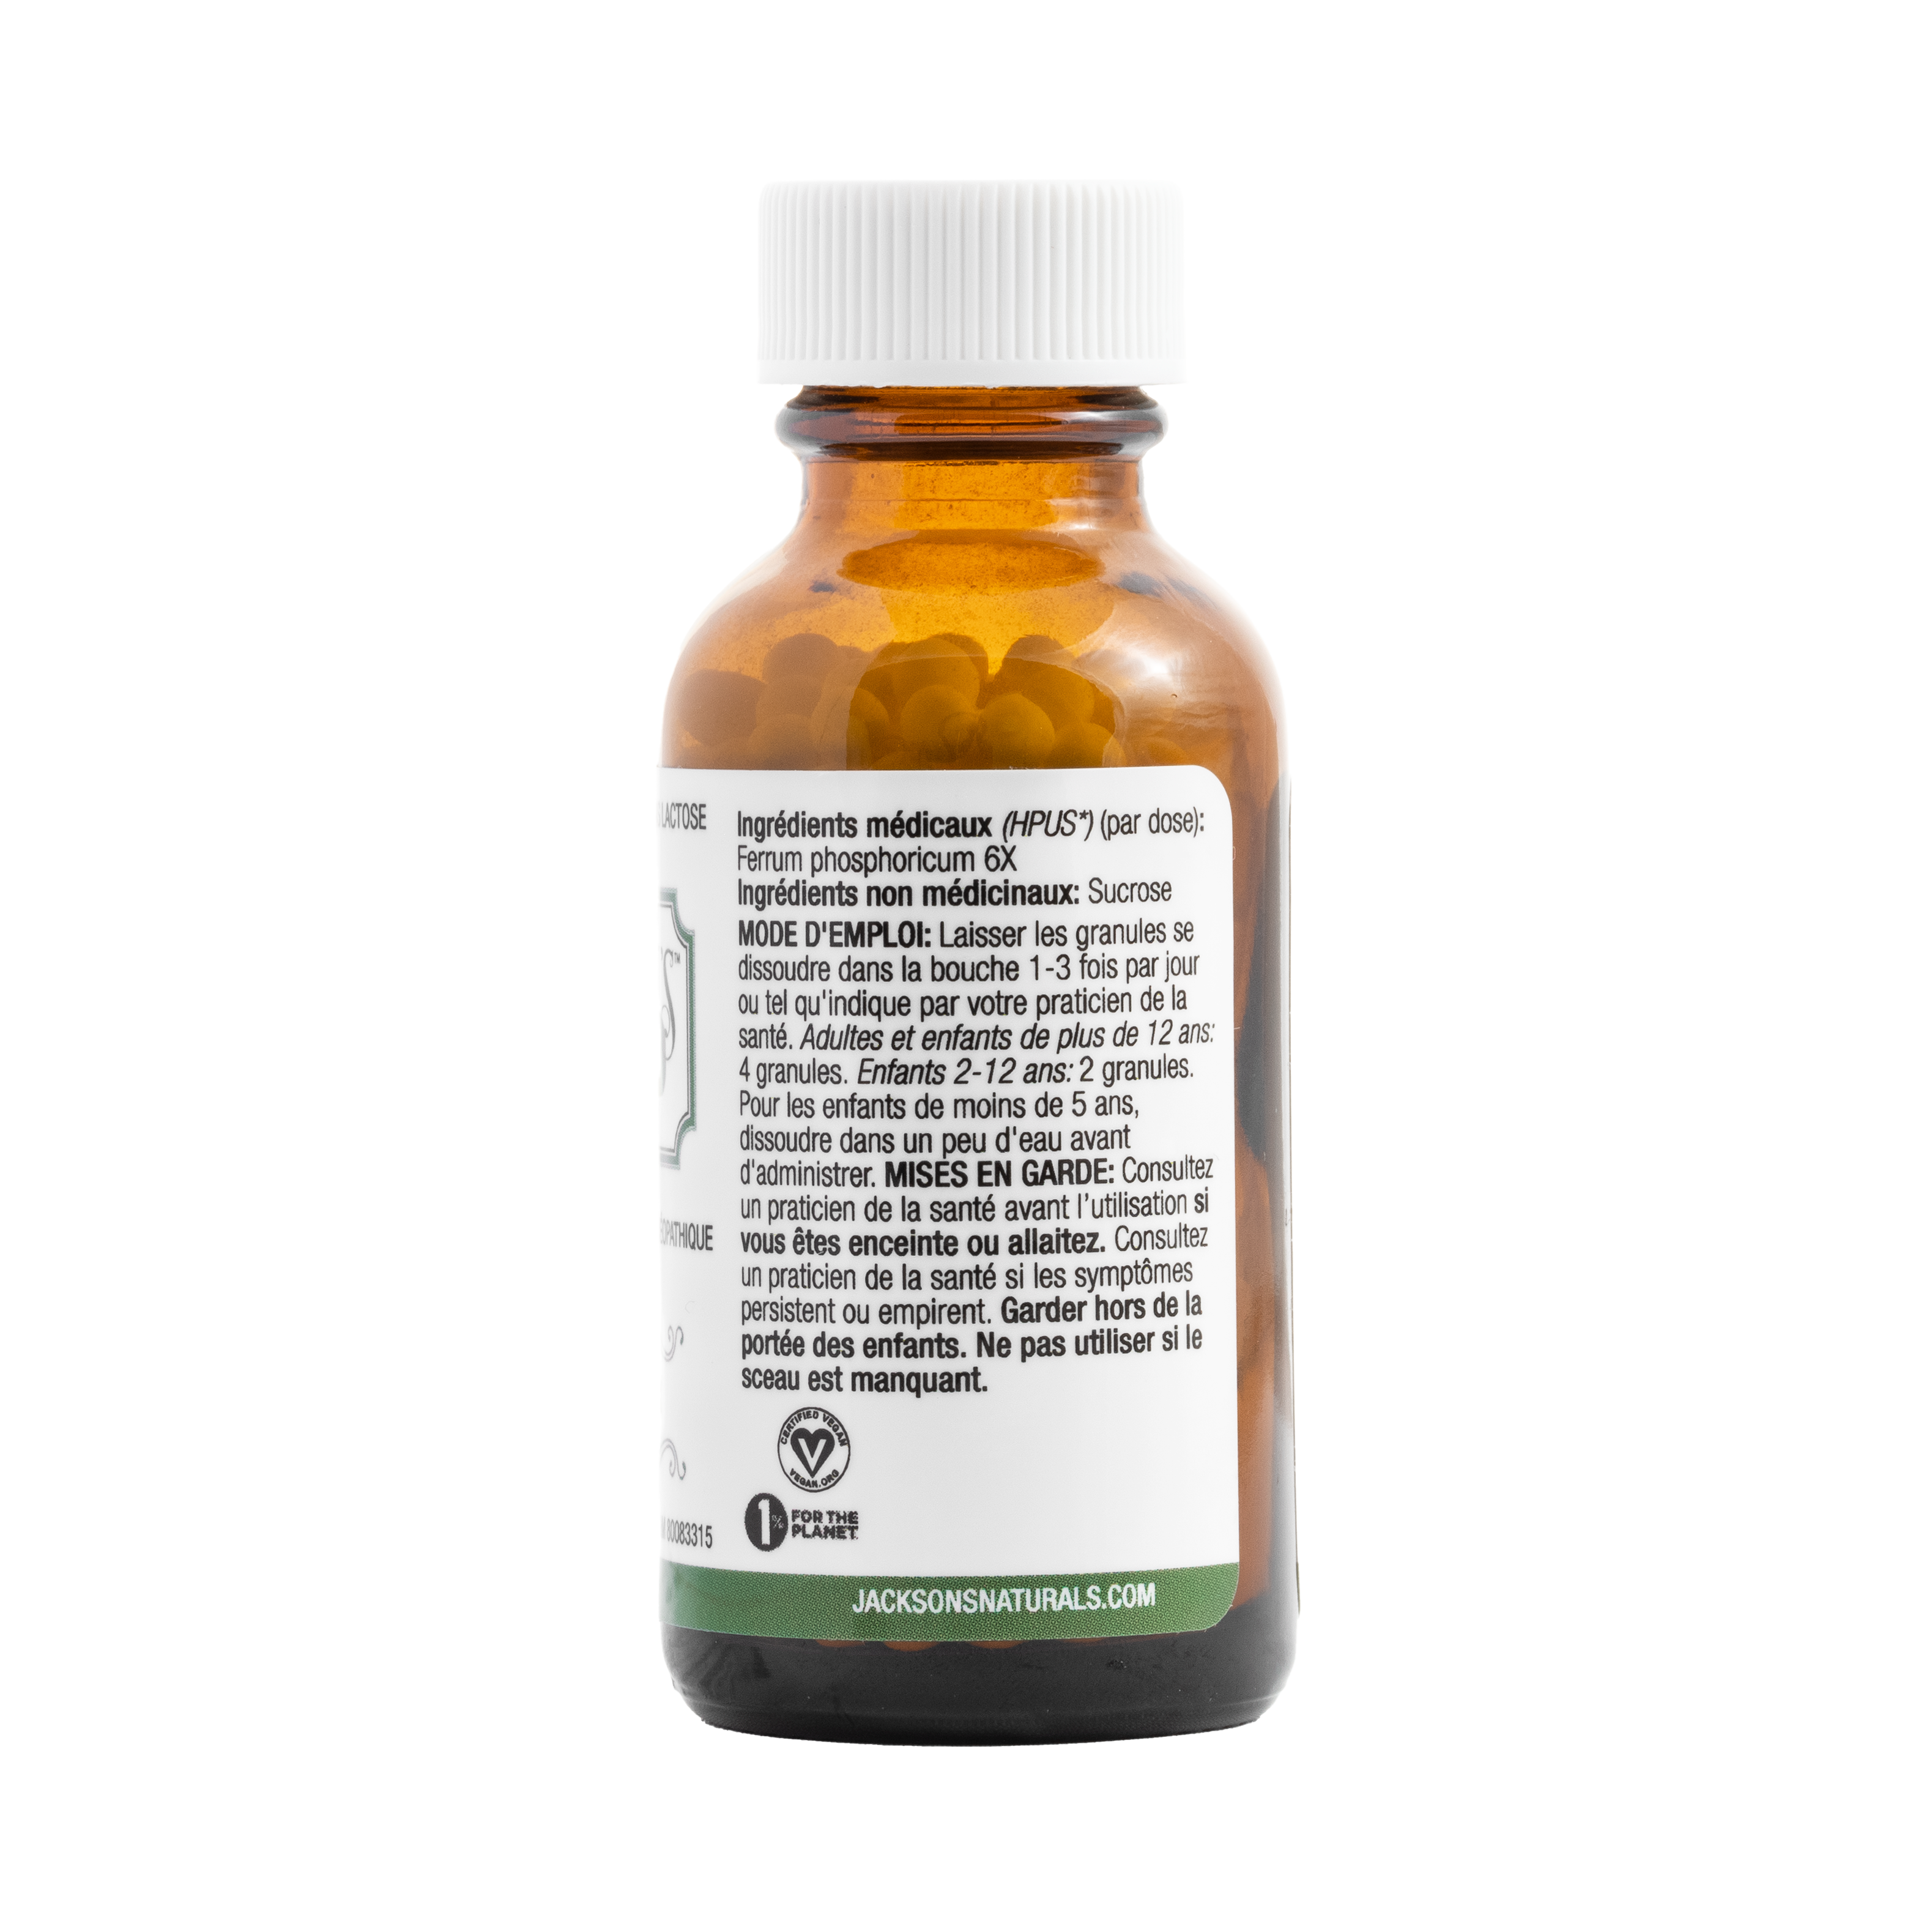 #4 Ferr phos 6X (Ferrum phosphate) - Sel de cellules Schuessler (tissus) certifié végétalien et sans lactose